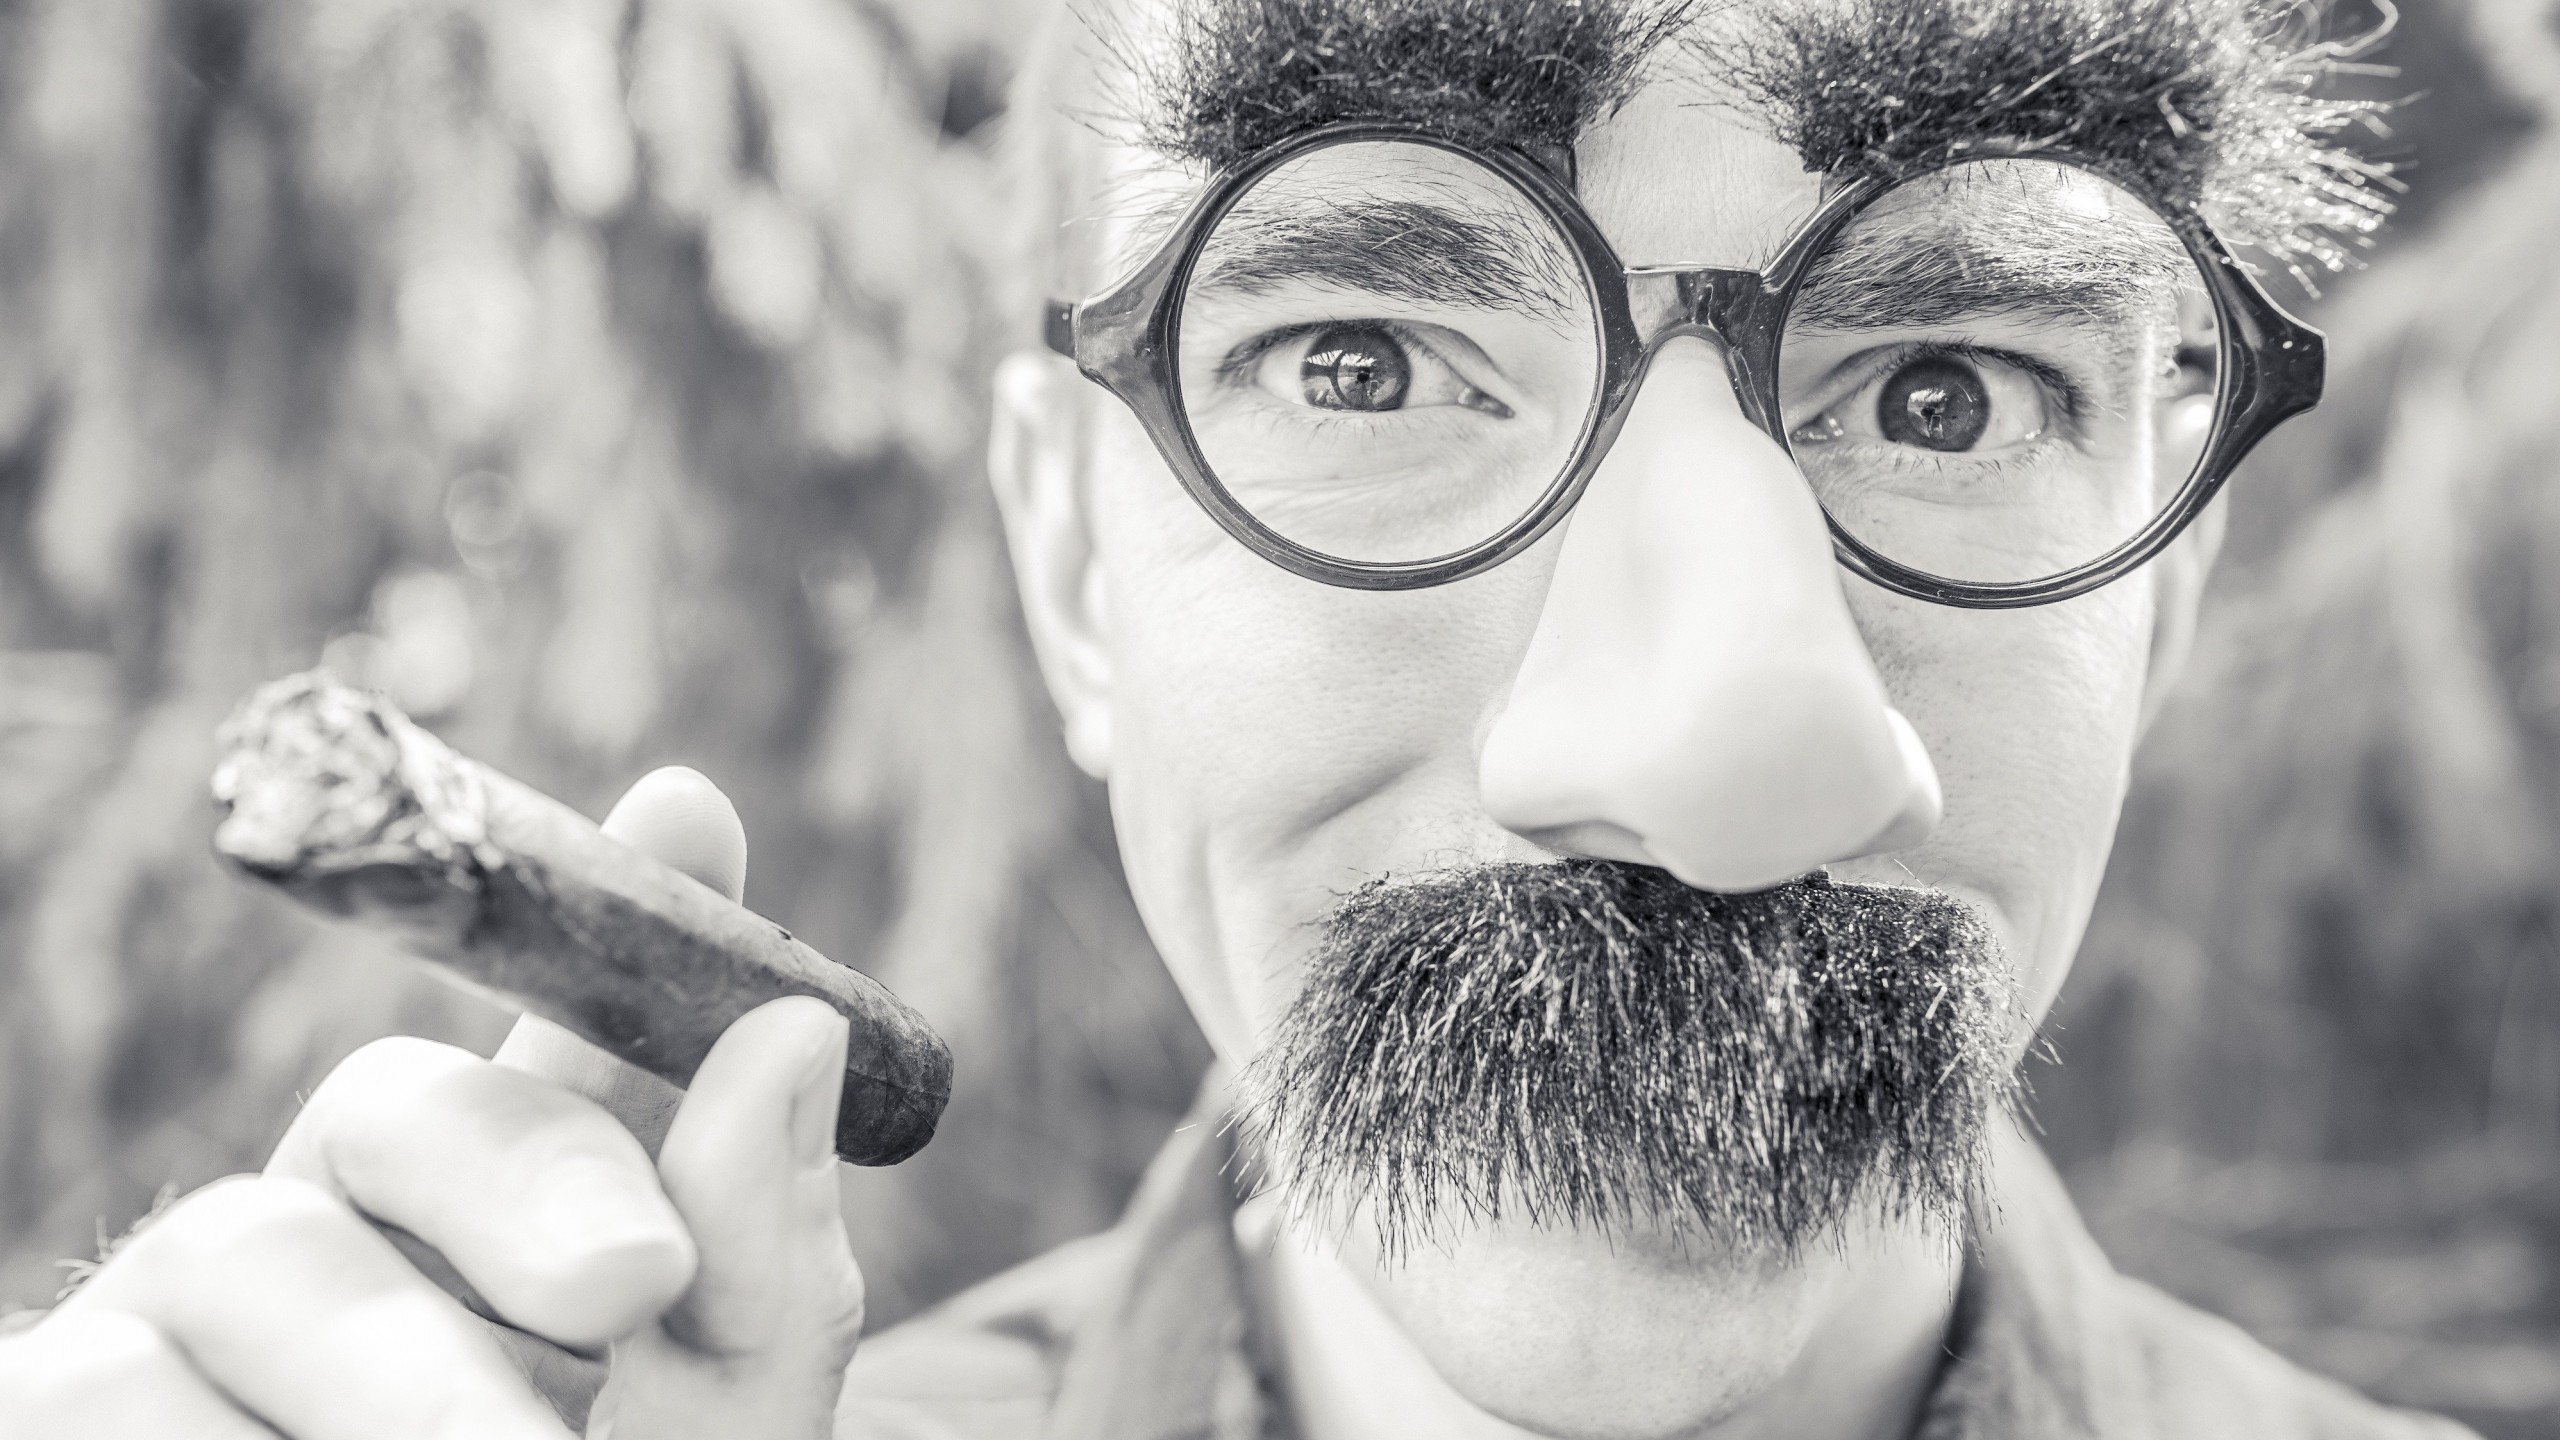 Groucho Glasses Man Wallpaper for Desktop 2560x1440